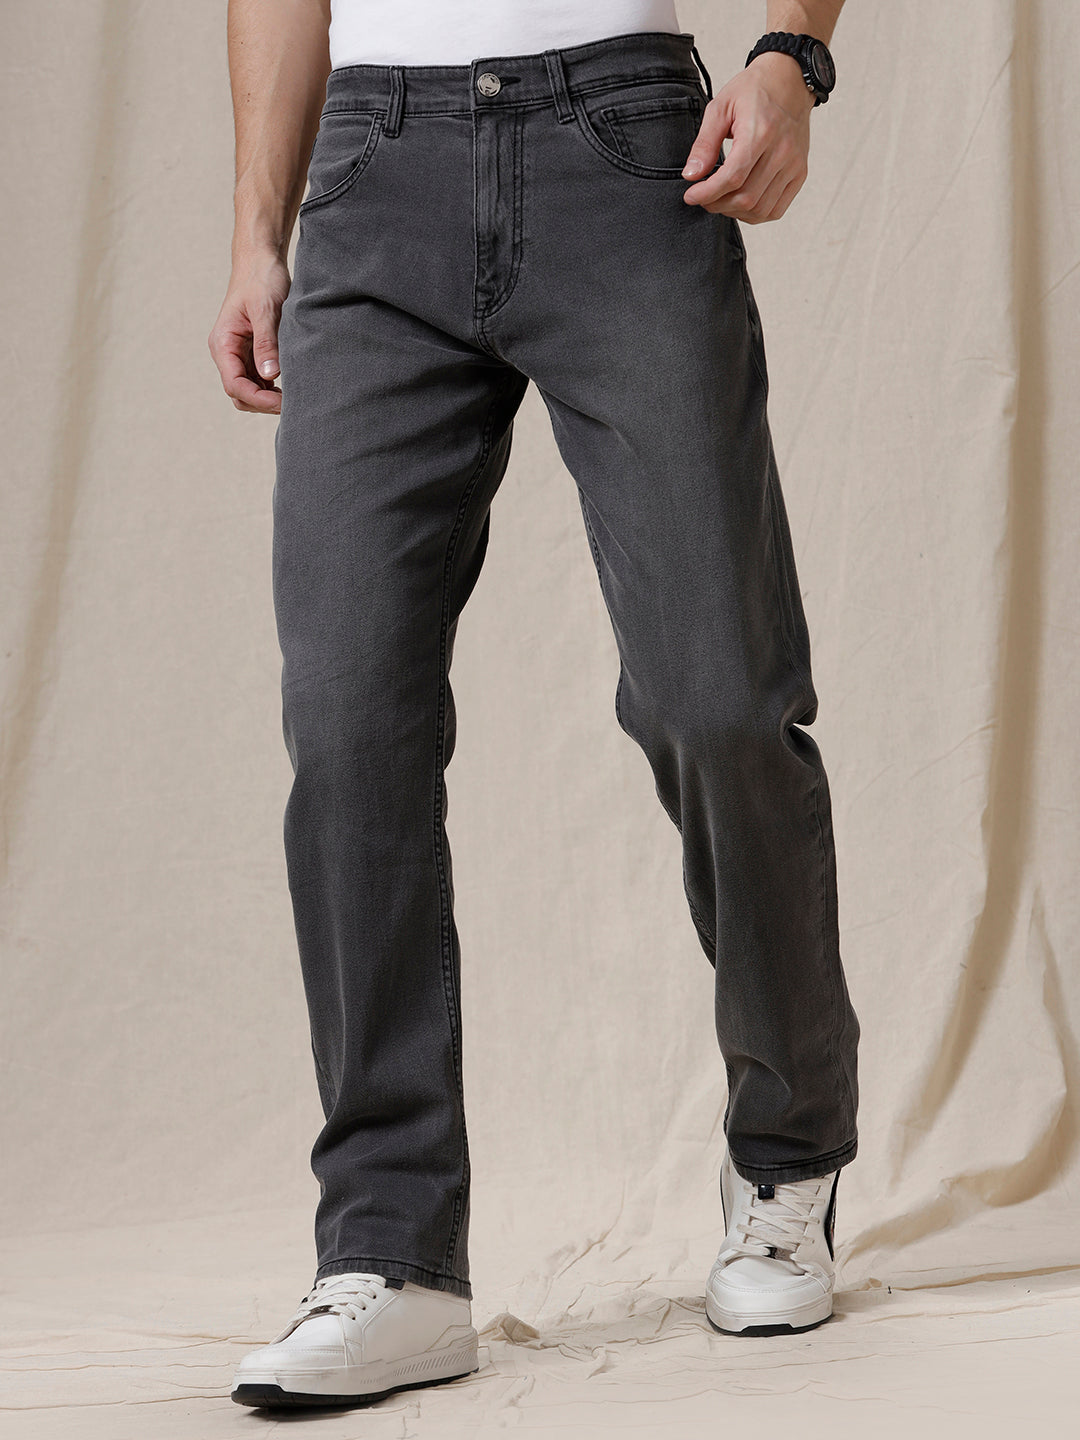 Men's Double L Jeans, Natural Fit, Straight Leg | Jeans at L.L.Bean